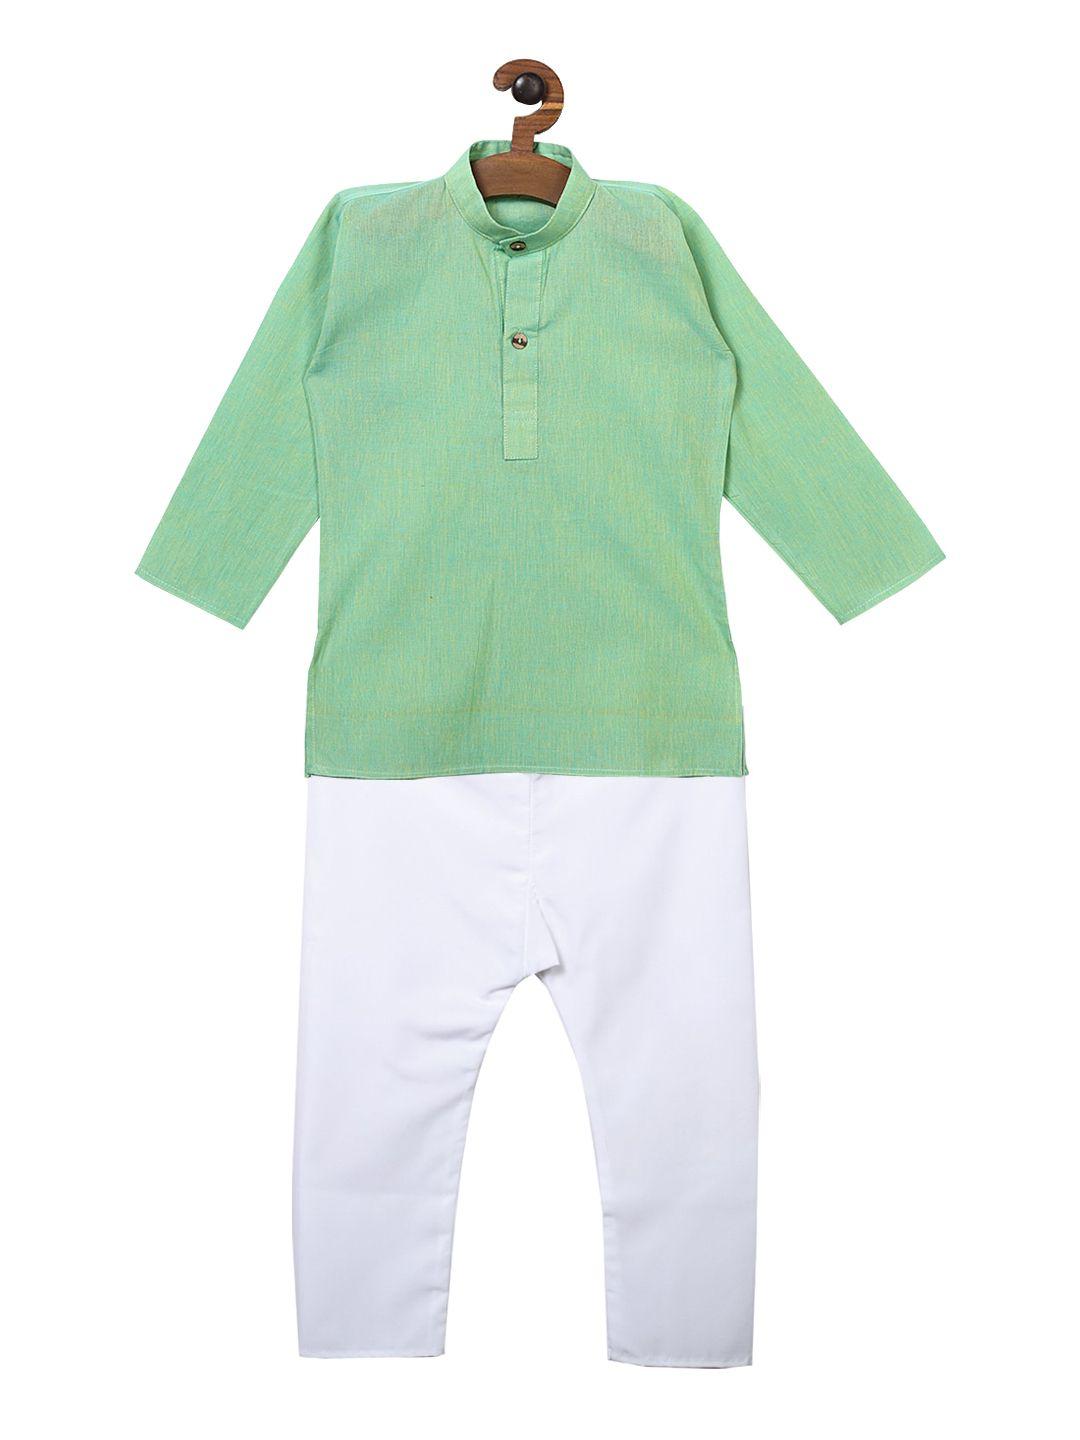 ridokidz boys green & white solid kurta with pyjamas